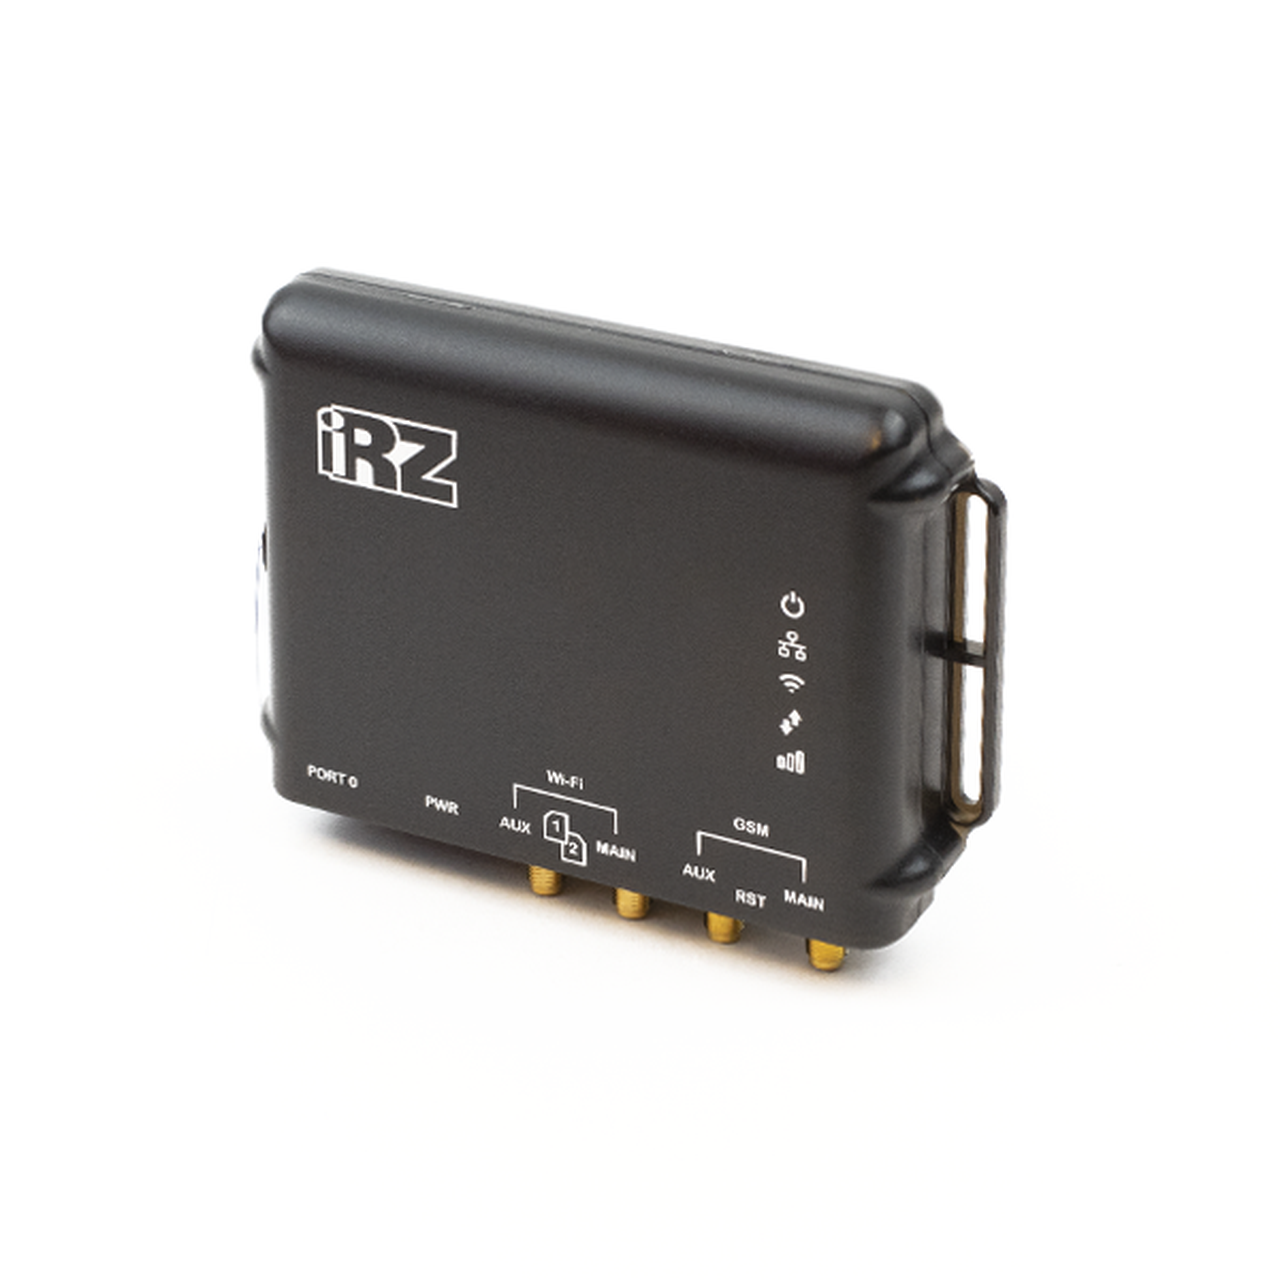 Обзор автомобильного Wi-Fi роутера iRZ RL01w с поддержкой двух SIM-карт главная картинка